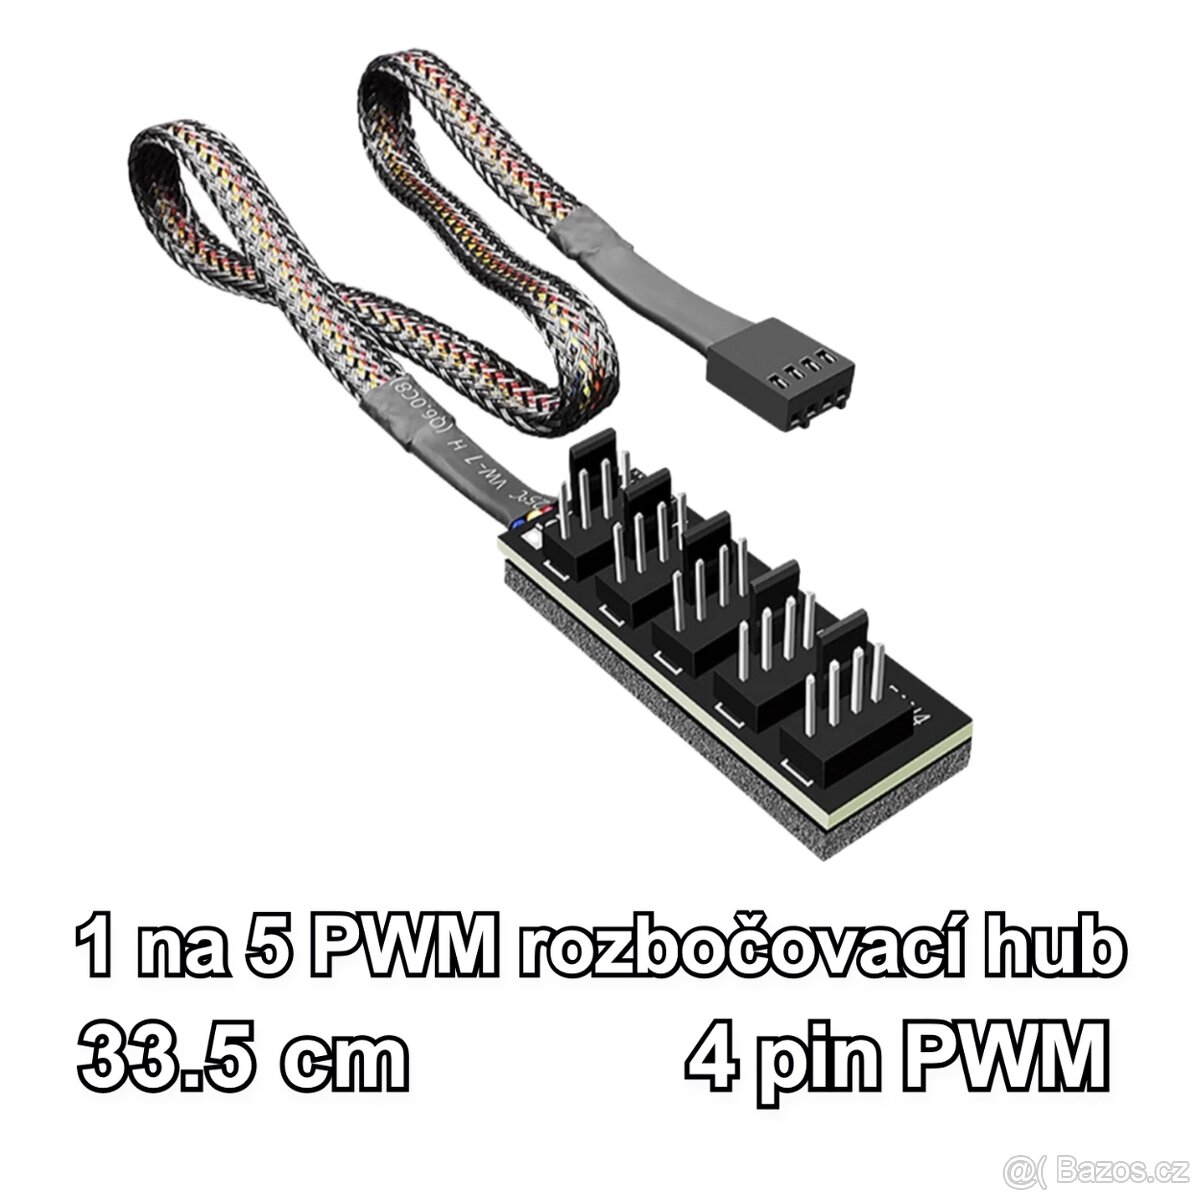 PWM fan splitter, rozbočovač/hub větráčků/ventilátorů PC